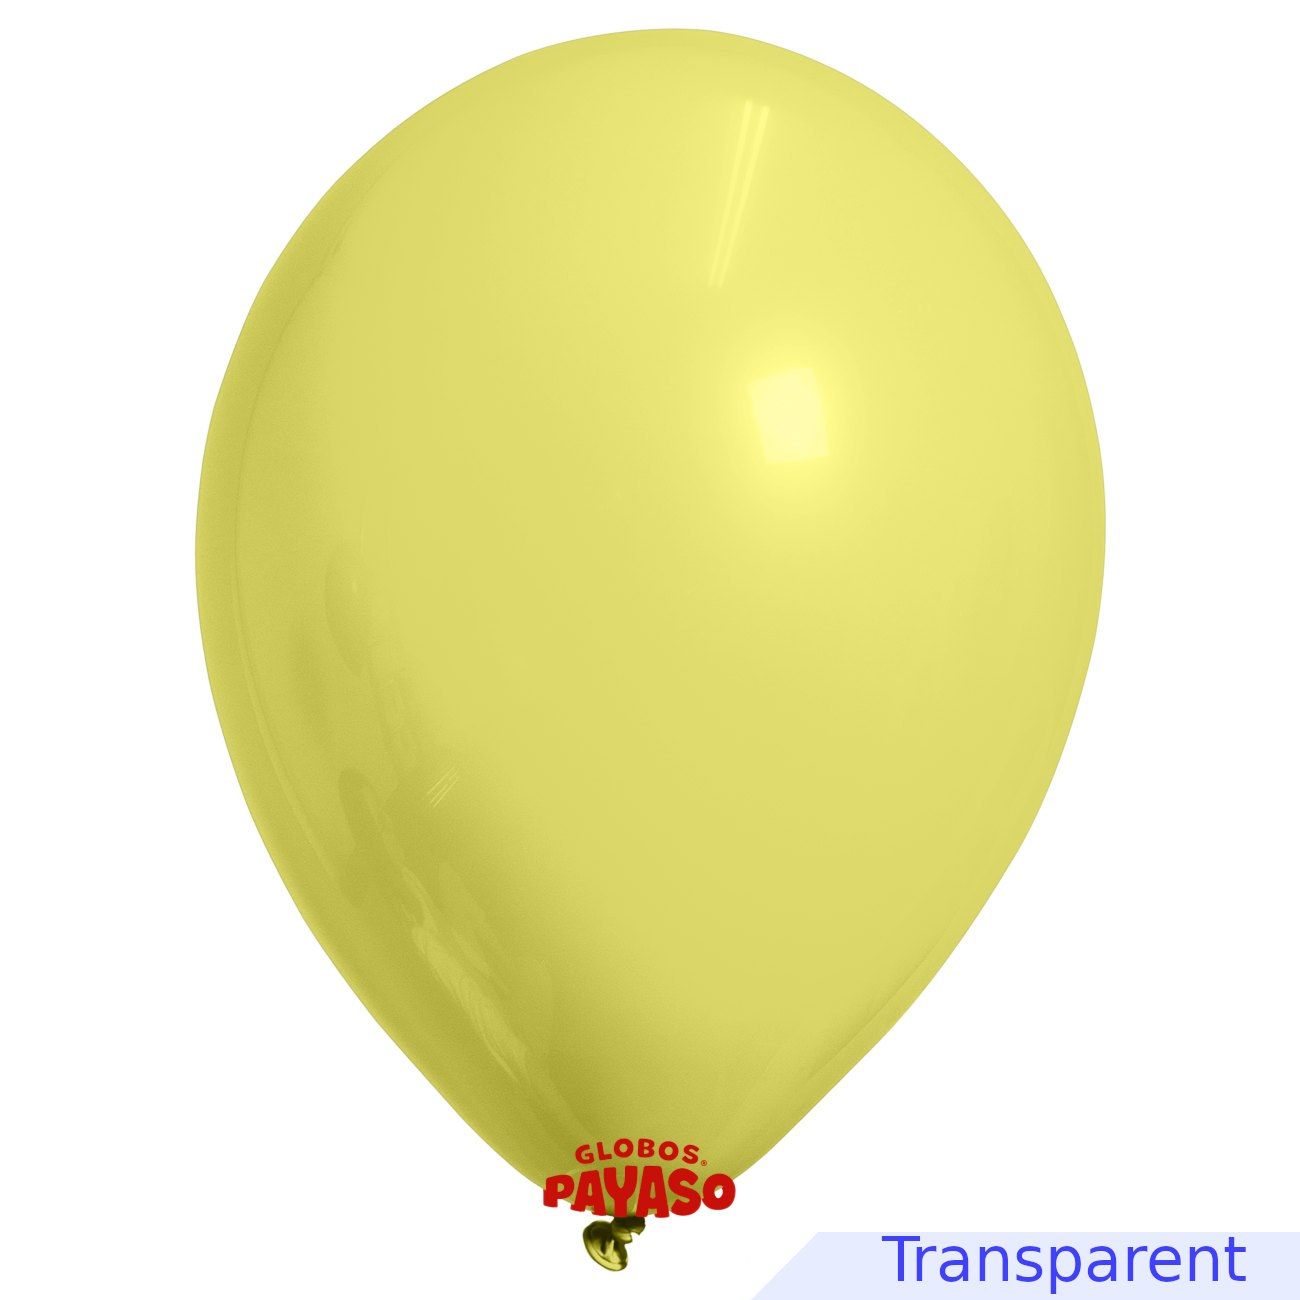 Globos Payaso / Unique 16" Jaune Translucide Décorateur Ballon